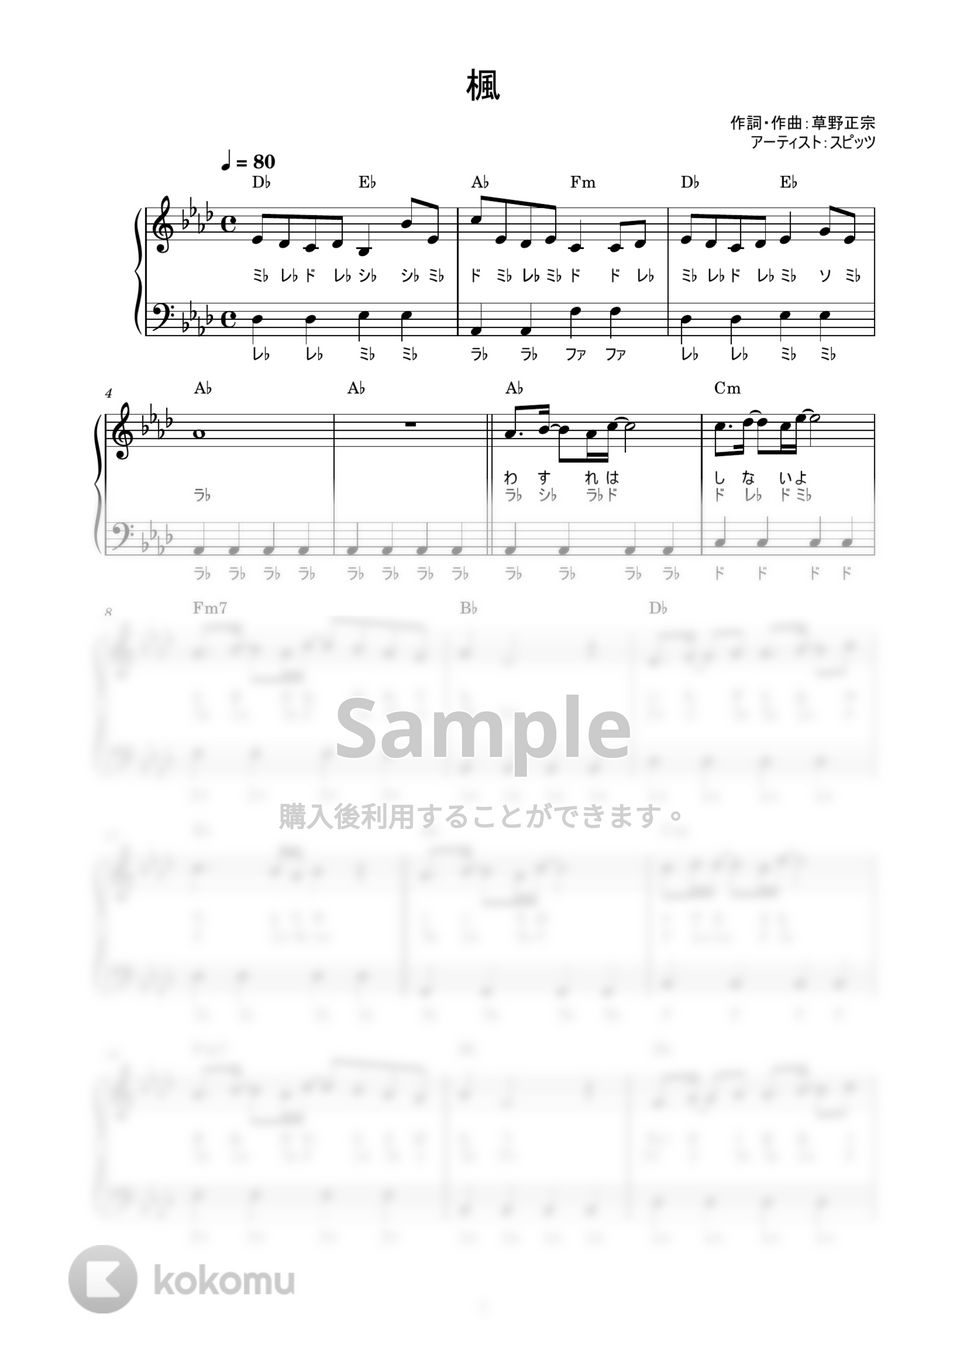 スピッツ - 楓 (かんたん / 歌詞付き / ドレミ付き / 初心者) by piano.tokyo